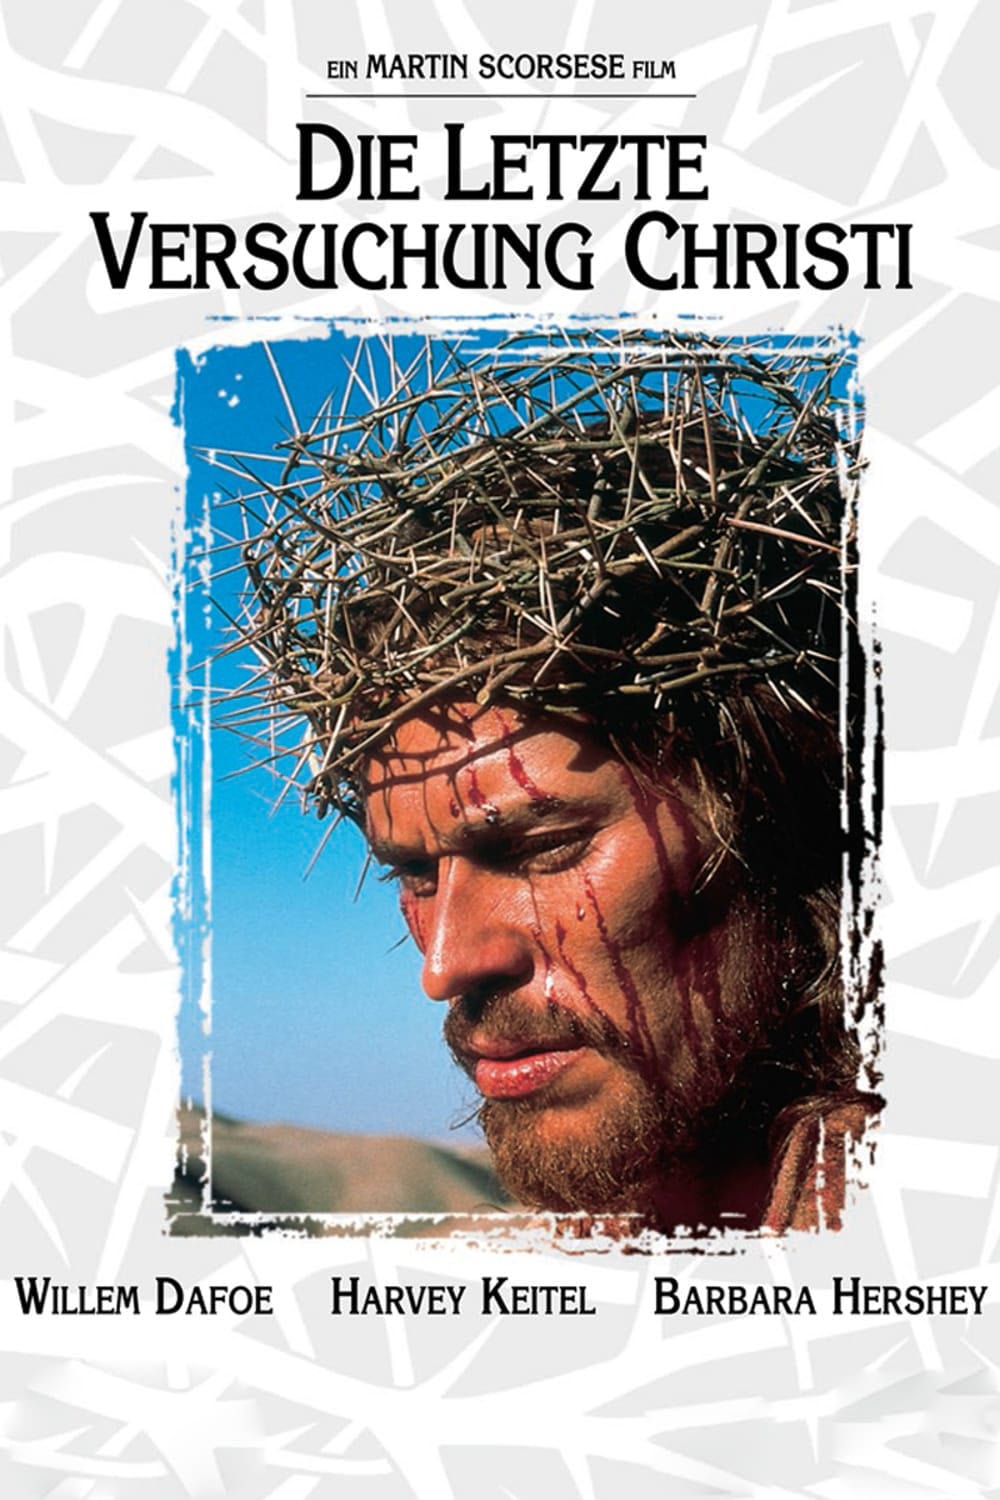 Plakat von "Die letzte Versuchung Christi"